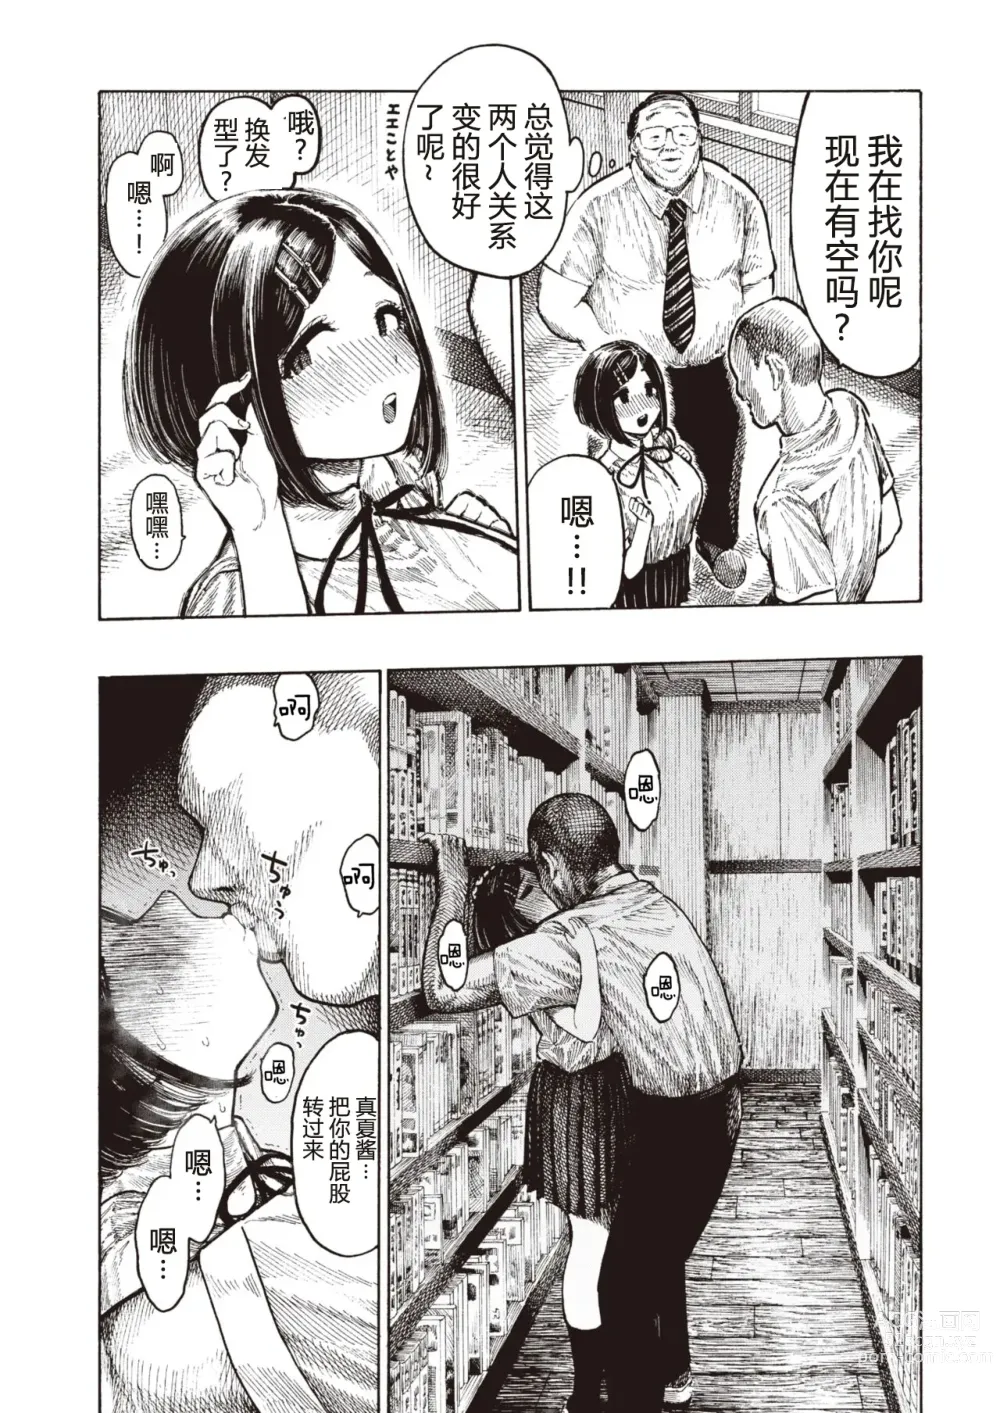 Page 31 of manga Manatsu-chan no Benkyoukai